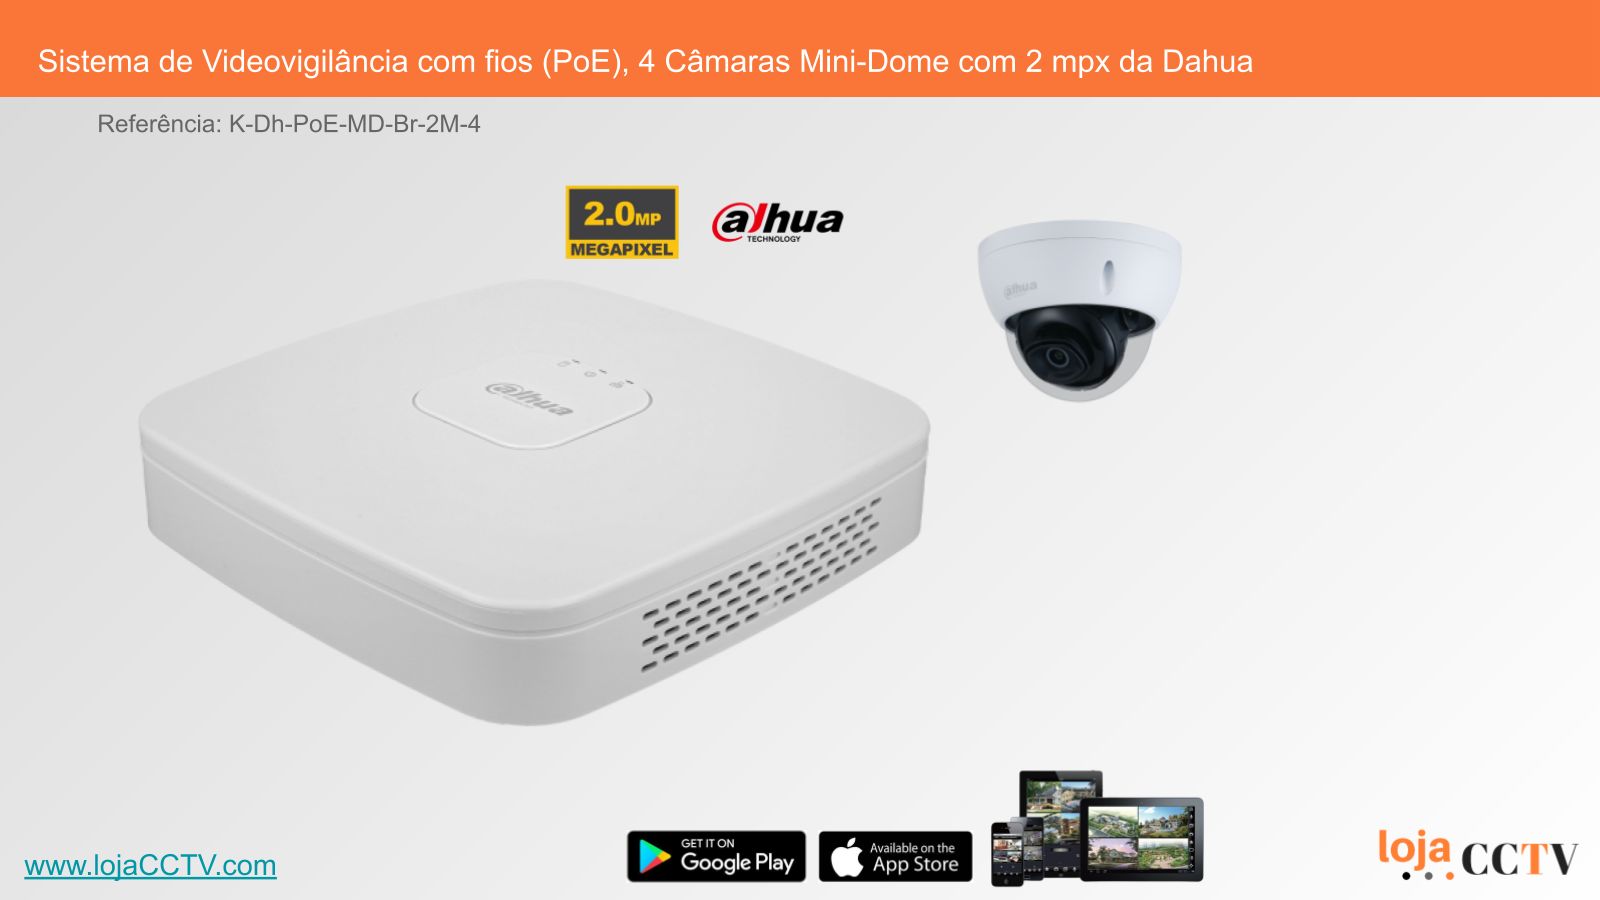 Videovigilância com fios (PoE) 4 Câmaras Mini-Dome 2 mpx, Dahua